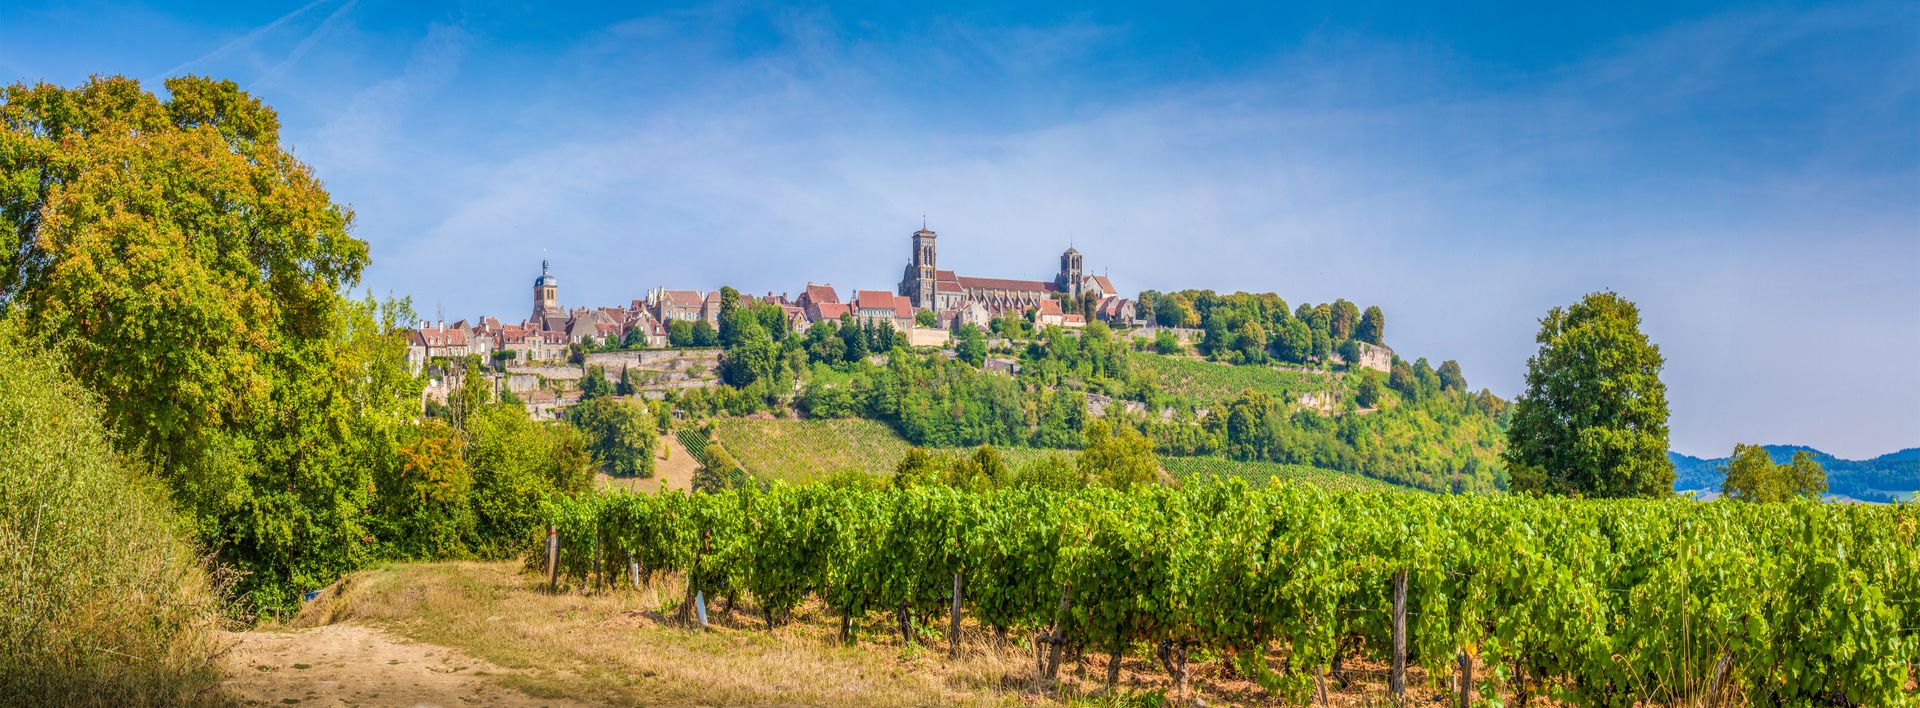 Vézelay - France ©iStock